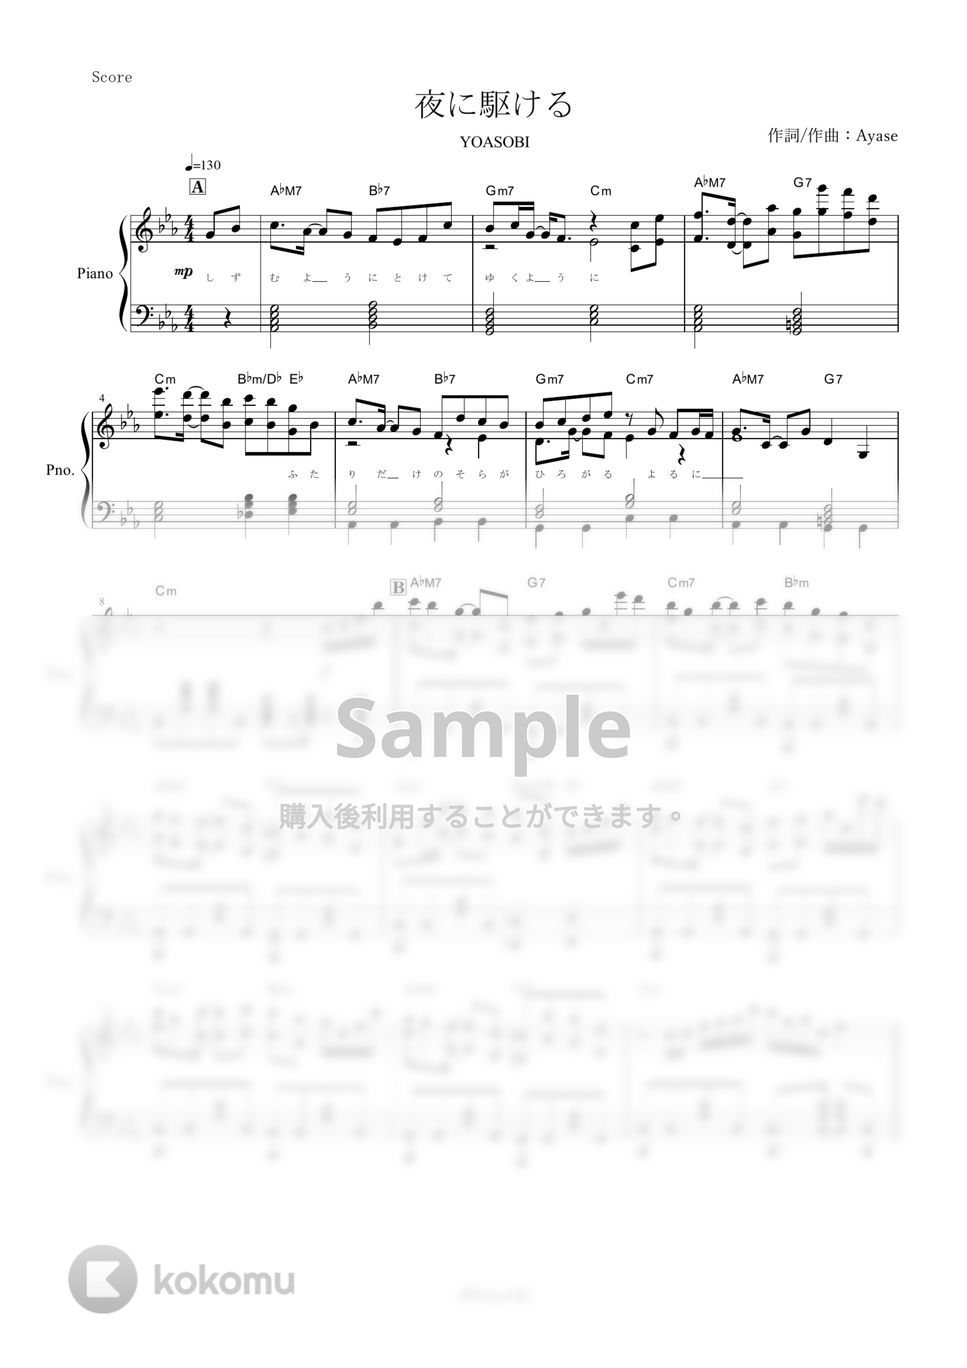 YOASOBI(Ayase) - 夜に駆ける (ピアノ楽譜/全７ページ) by yoshi